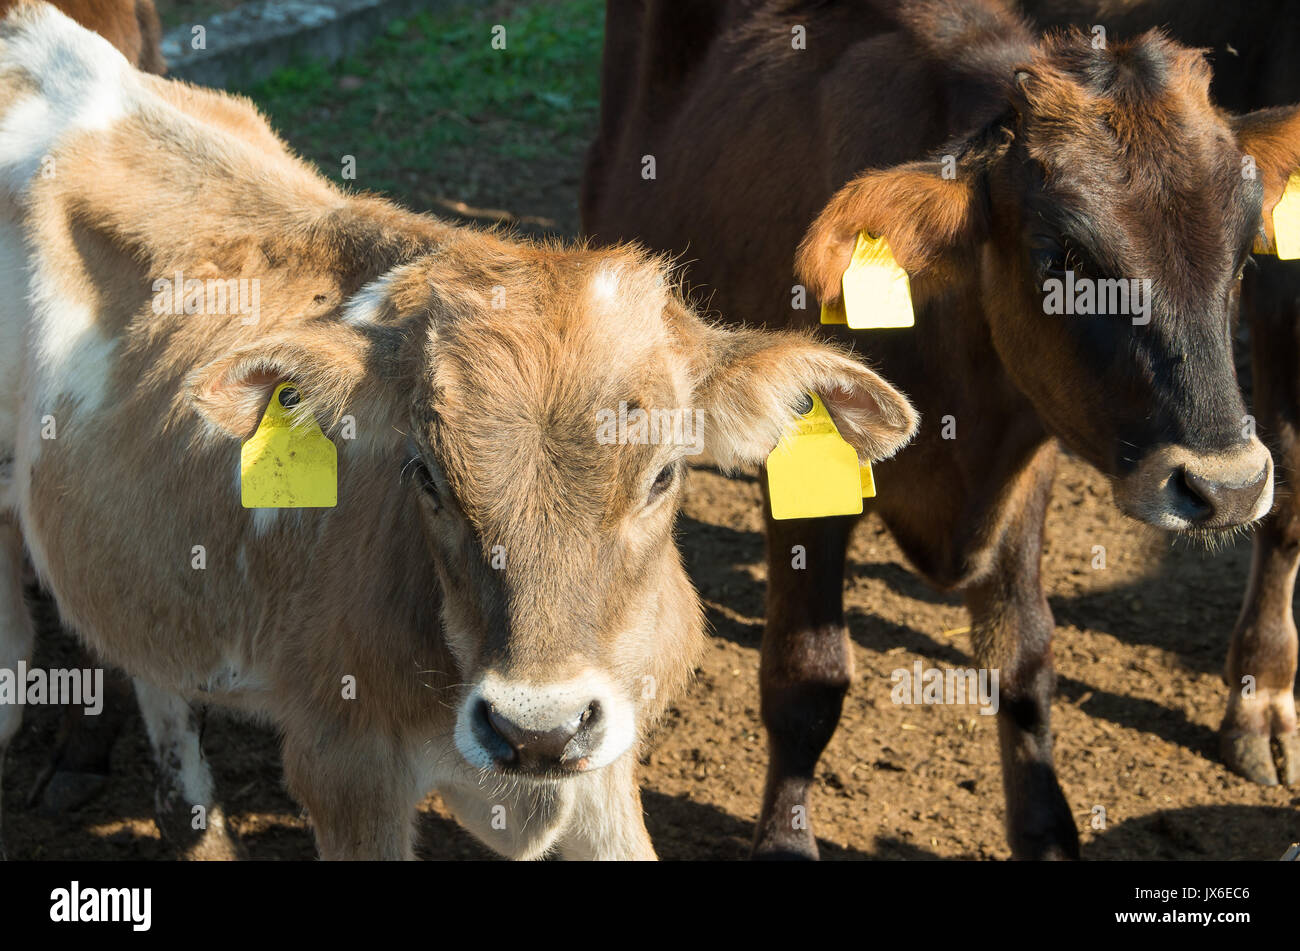 Baby cows. Calves. Stock Photo